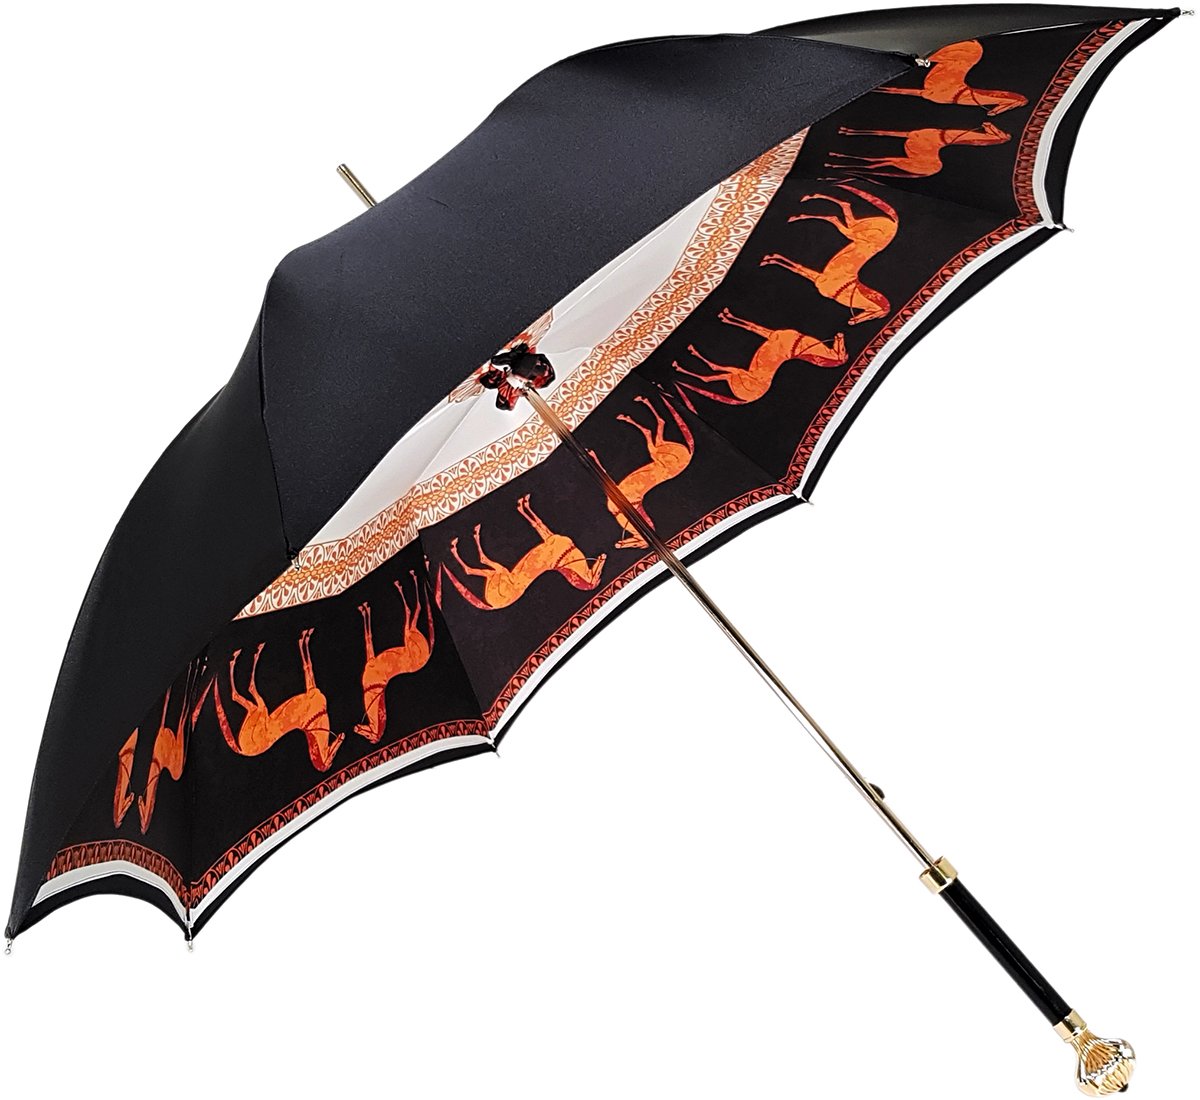 Double Cloth Women's Umbrella with Printed Horses Design - il-marchesato